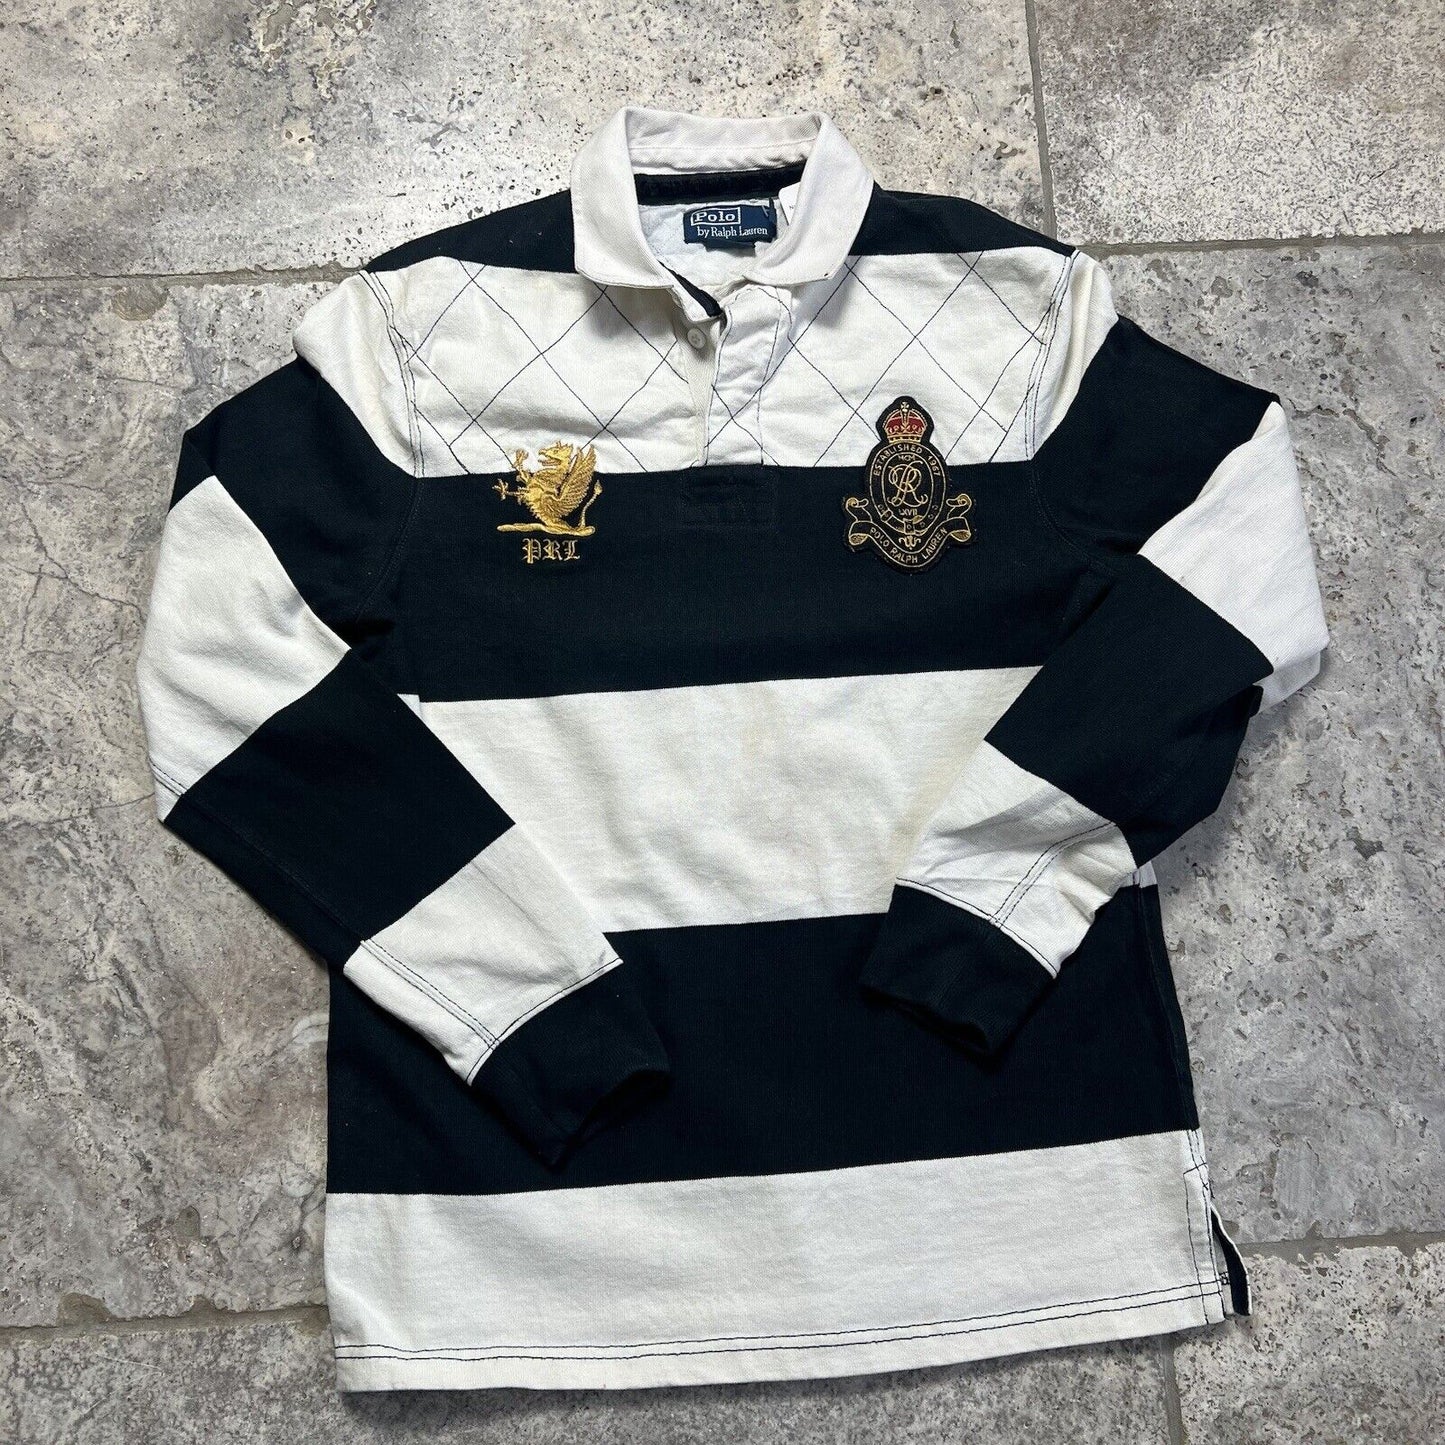 Mens Ralph Lauren Rugby Shirt Size Medium